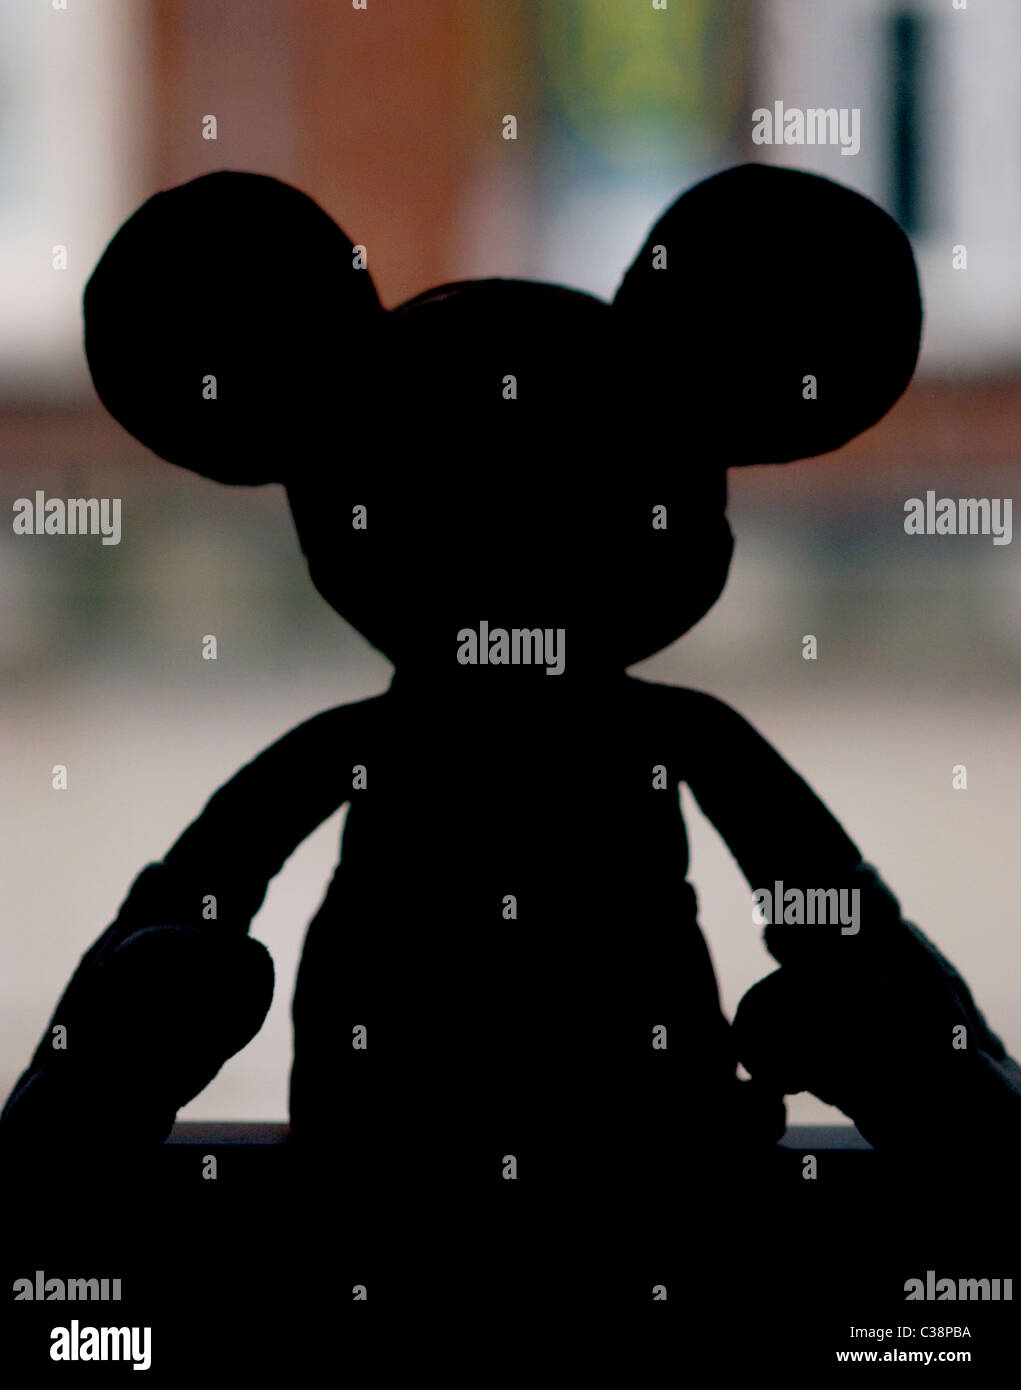 Mickey mouse juguetes variados. EE.UU Fotografía de stock - Alamy